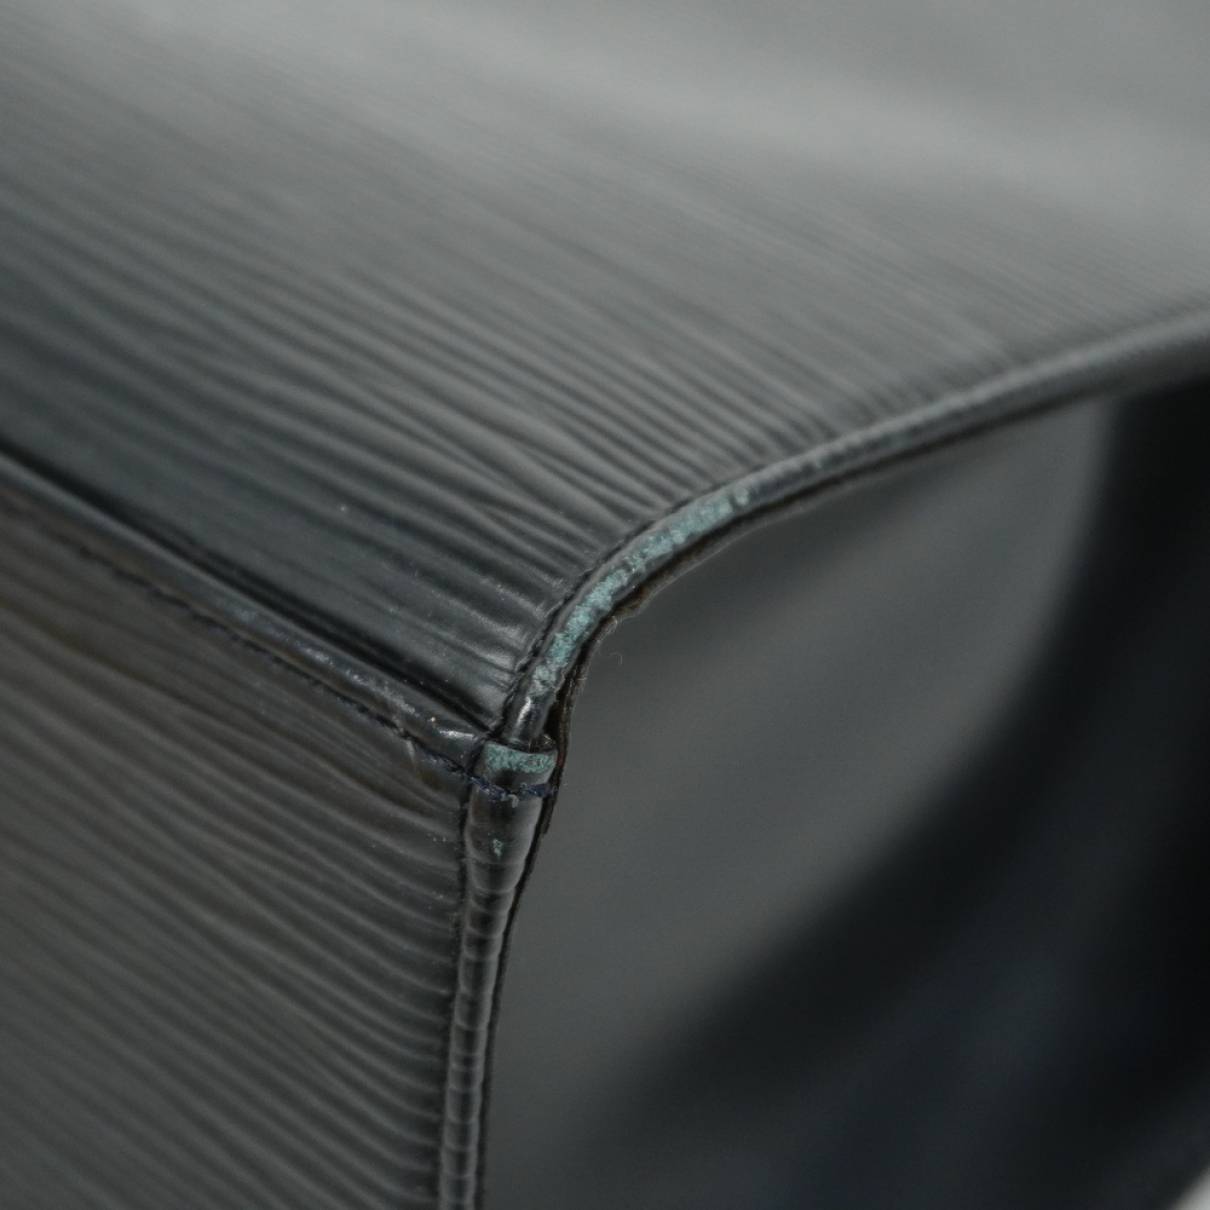 Authentic Louis Vuitton Black Epi Leather Croisette PM Tote Bag